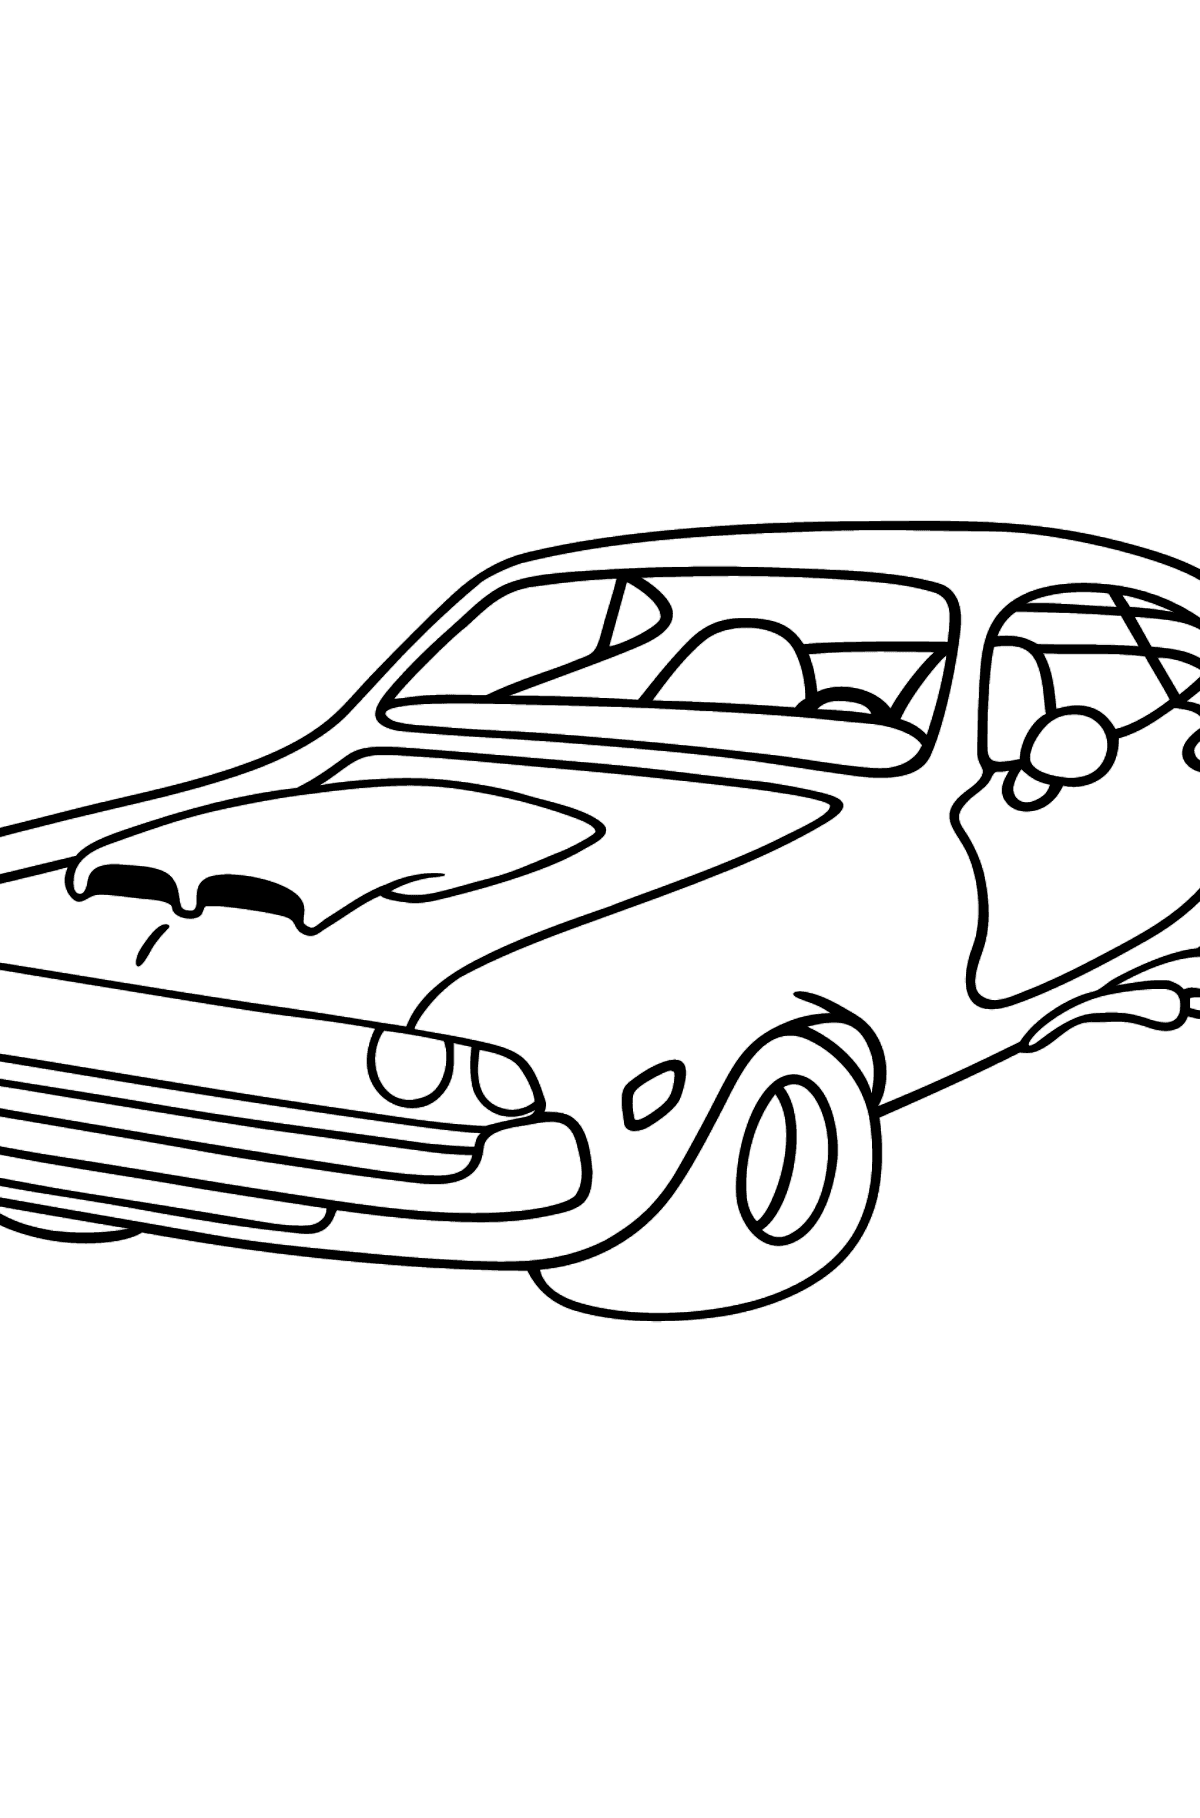 Desen de colorat masina chevrolet - Desene de colorat pentru copii